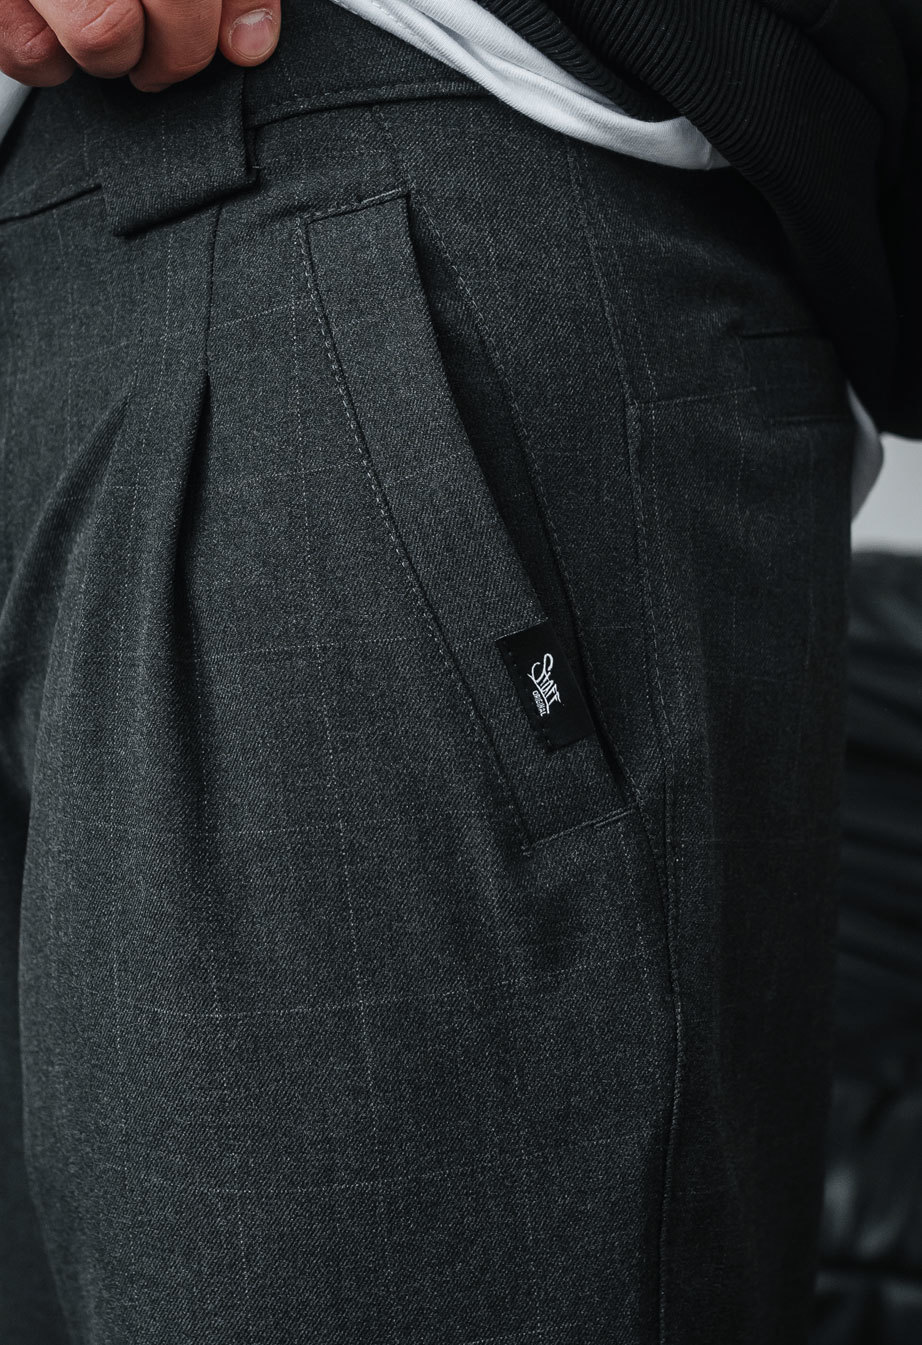 Spodnie Staff line dark gray square